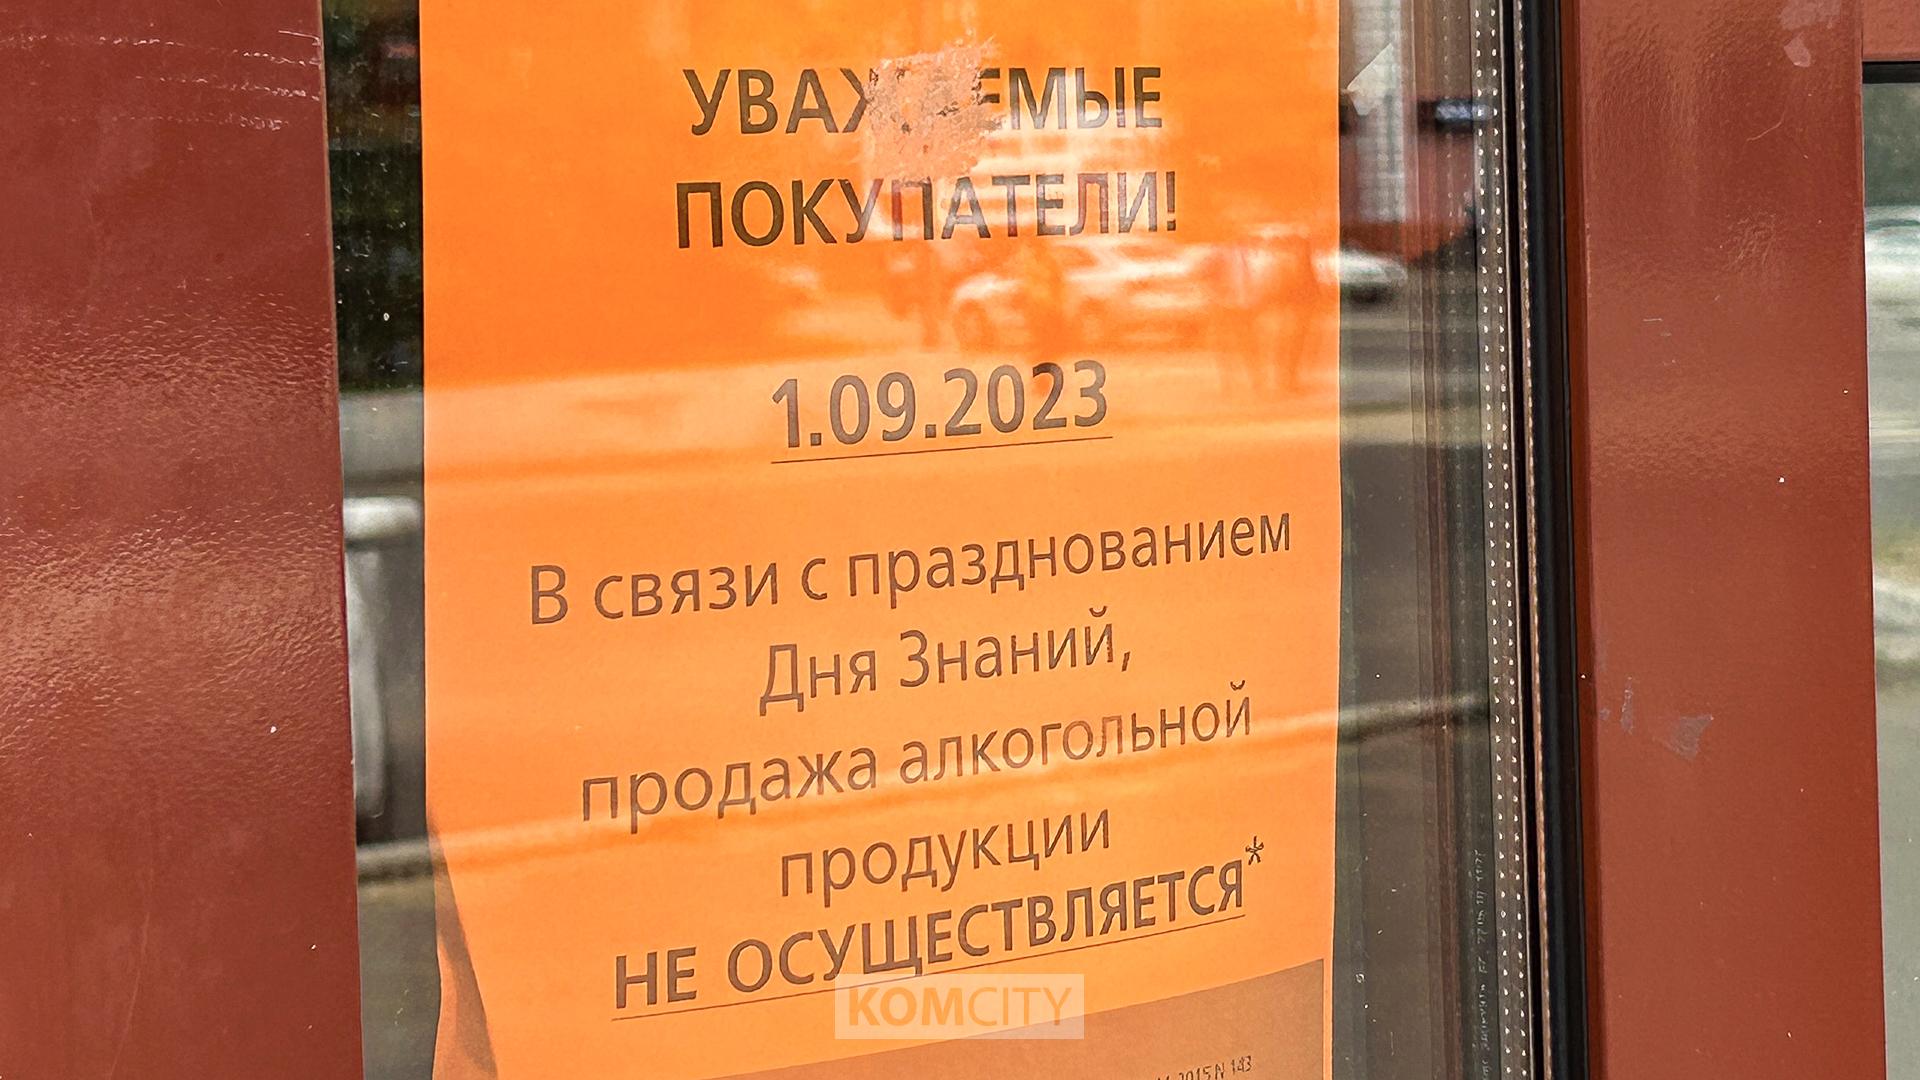 Завтра, в День знаний, в Комсомольске не будут продавать алкоголь